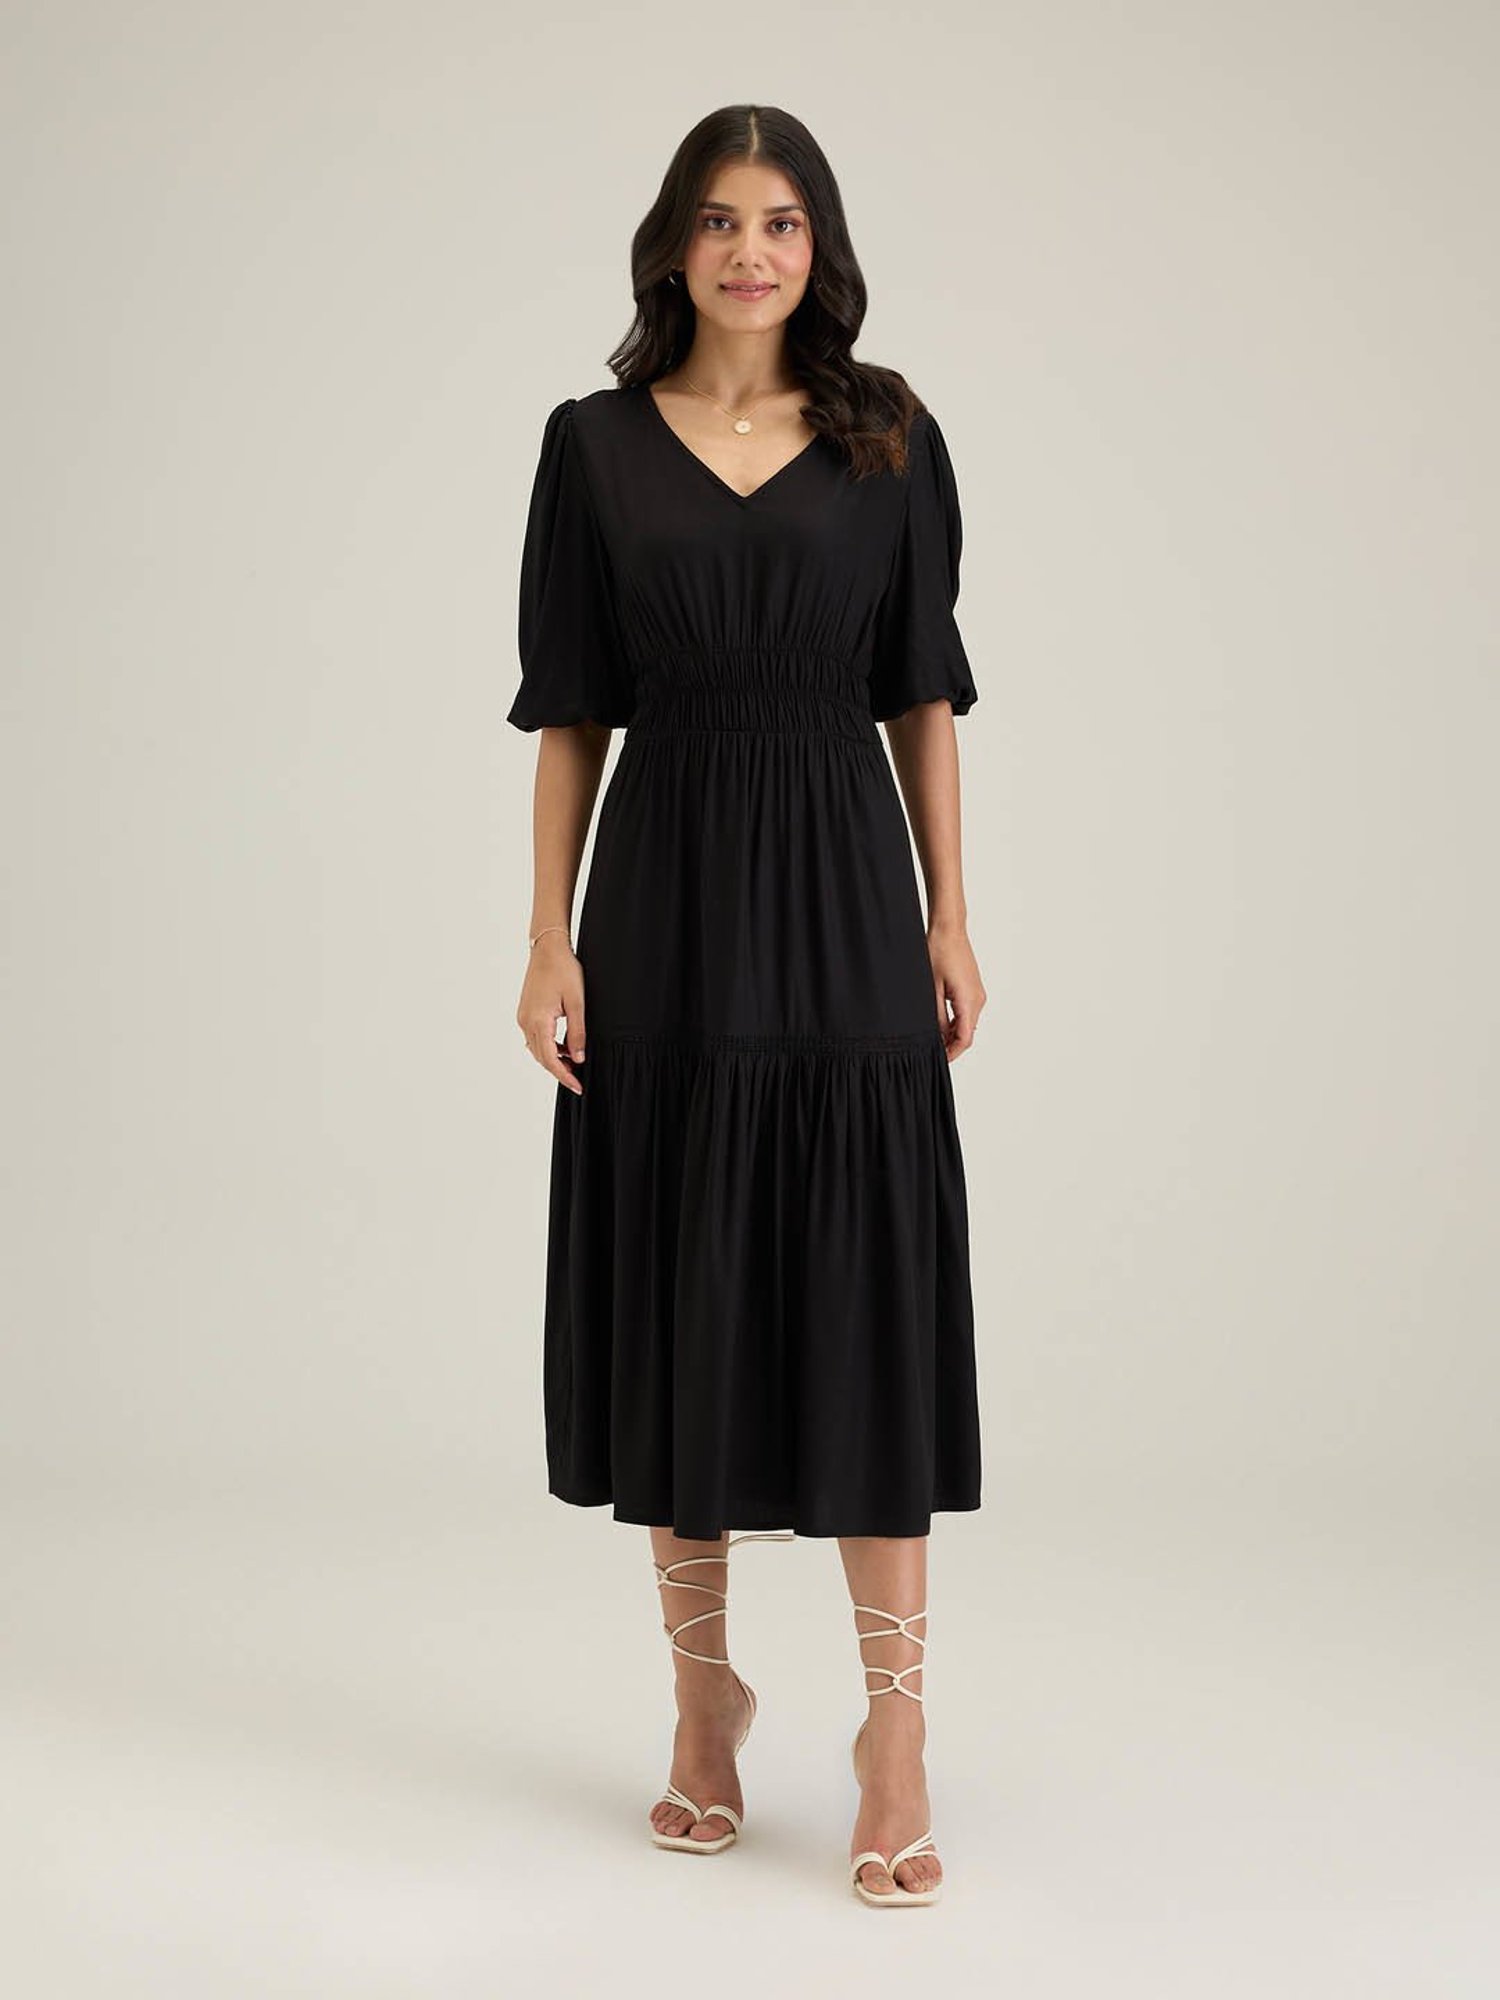 Grace Kelly Vintage Off-the-shoulder Black Midi Dress - TheCelebrityDresses